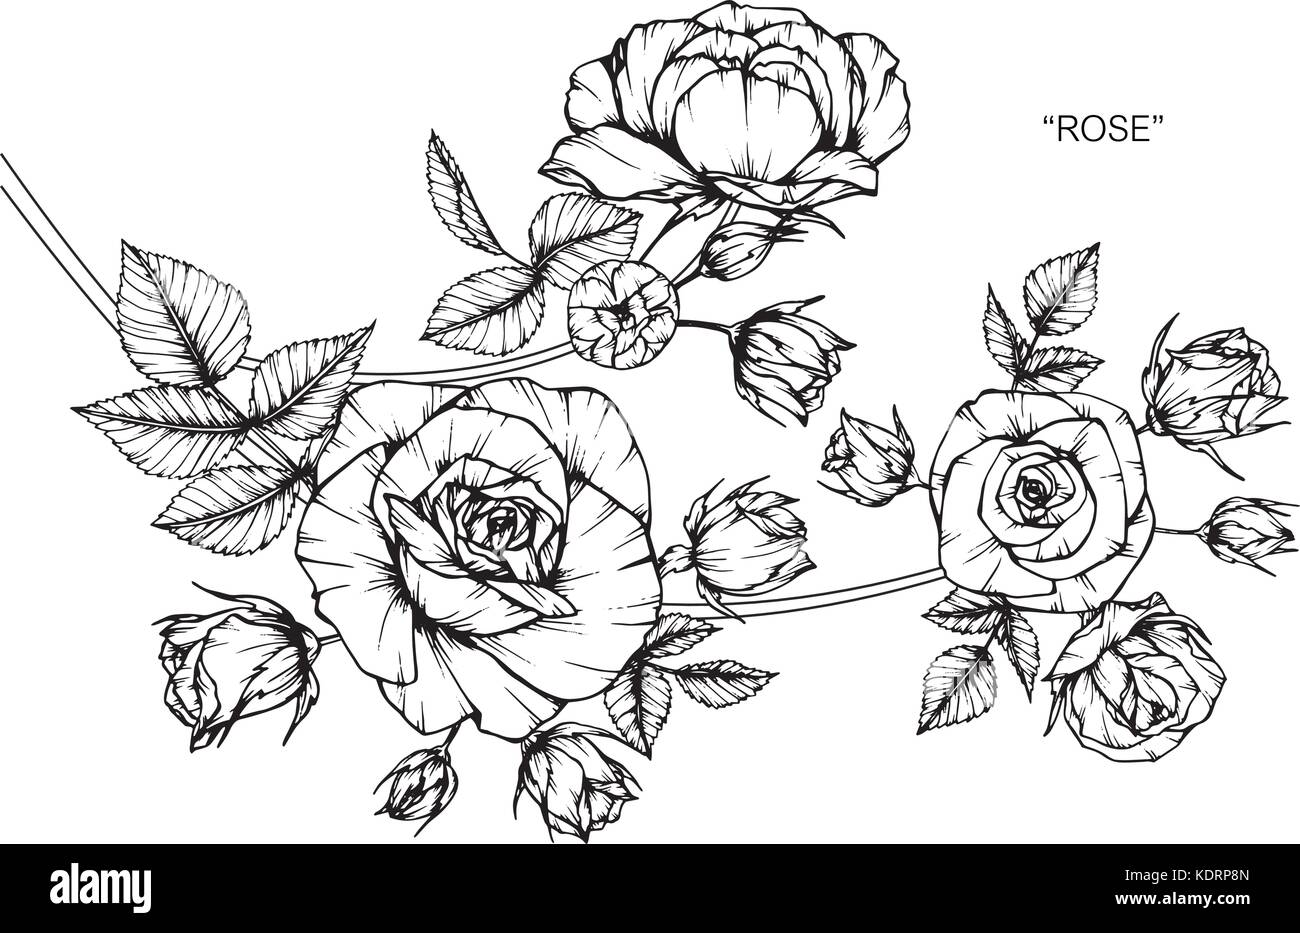 Ilustracion Dibujo De Flores Rosas Blanco Y Negro Con La Linea